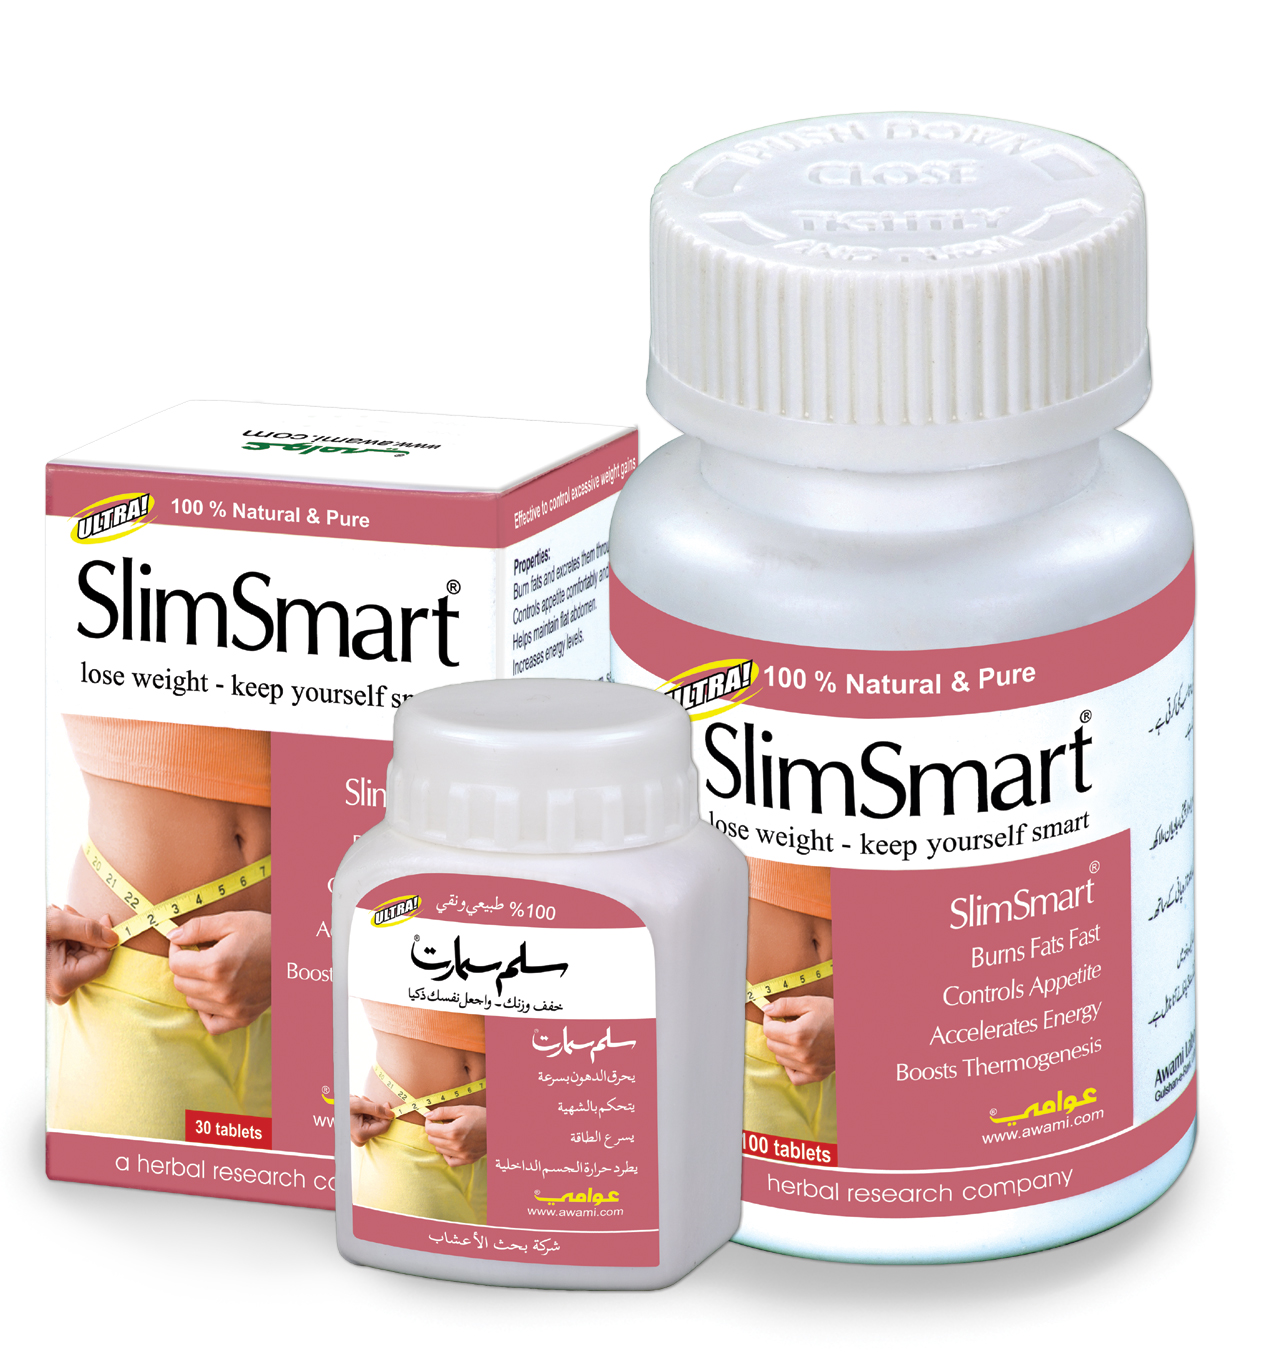 101--Awami-SlimSmart_weight loss